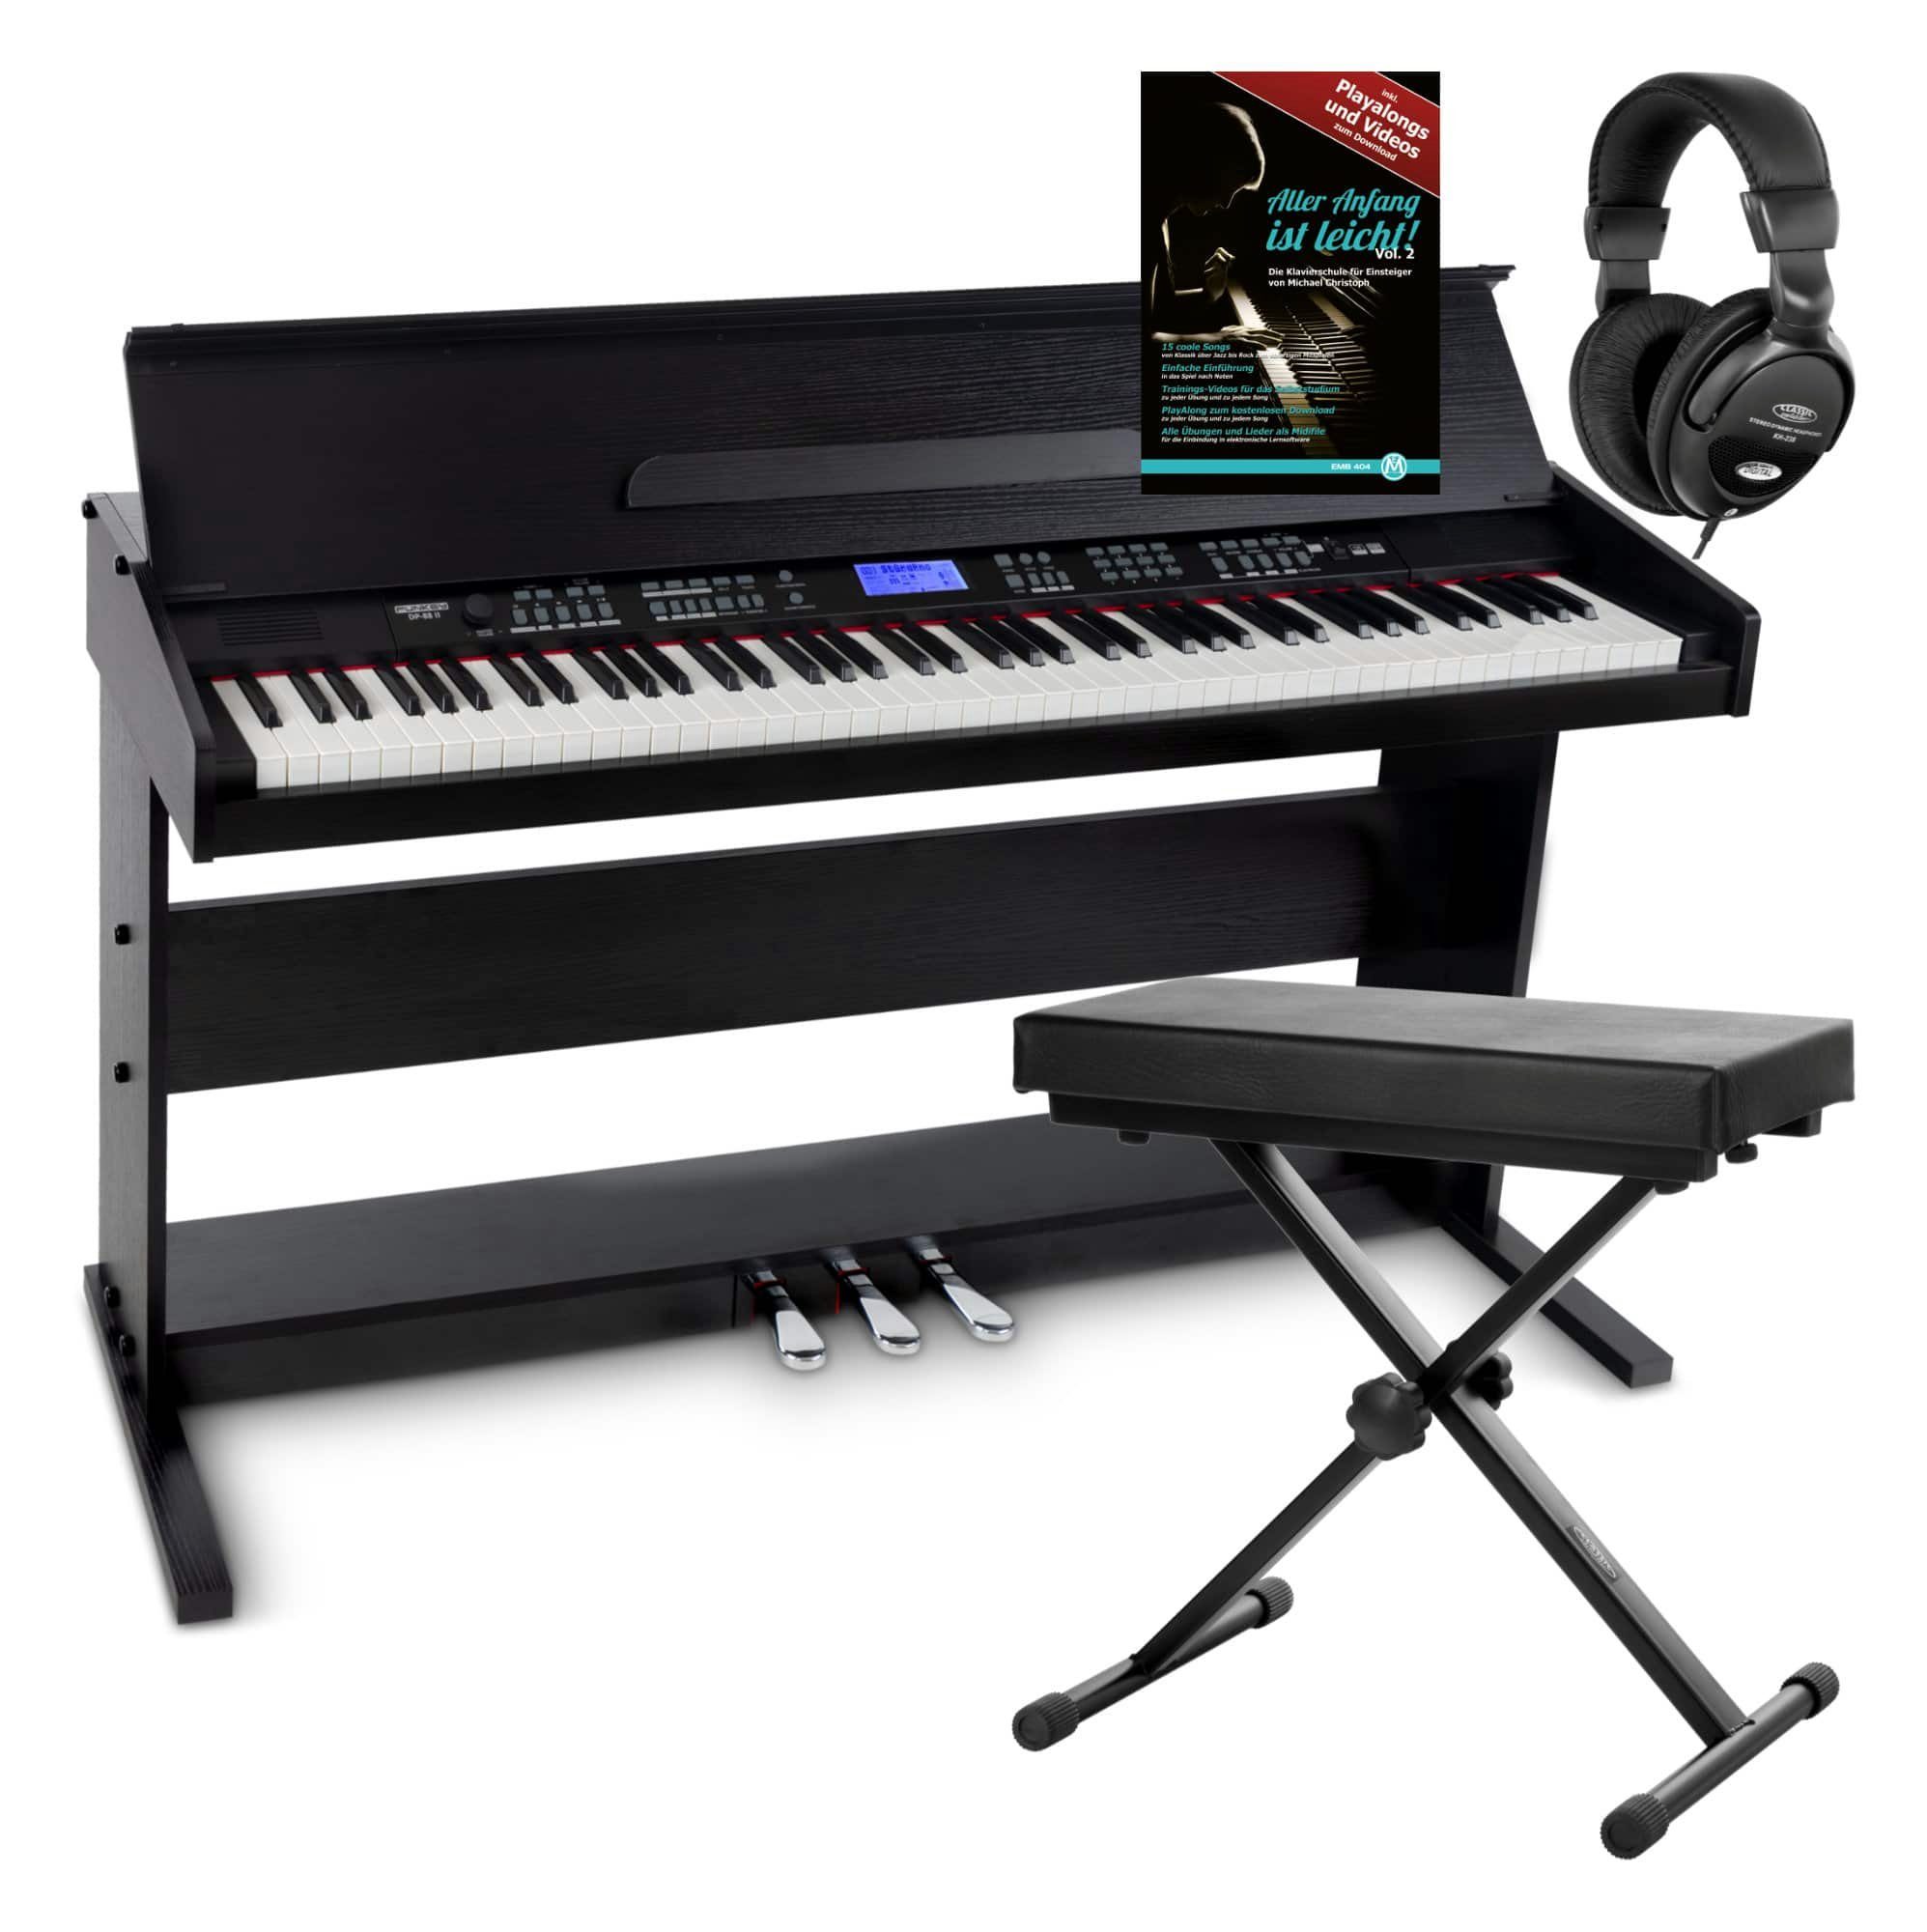 FunKey Digitalpiano DP-88 II E-Piano mit 88 anschlagsdynamische Tasten,  (Spar-Set, 4 tlg., inkl. Keyboardbank, Kopfhörer und Klavierschule),  umfangreiche Begleitautomatik und Keyboard Chord Akkordbegleitung